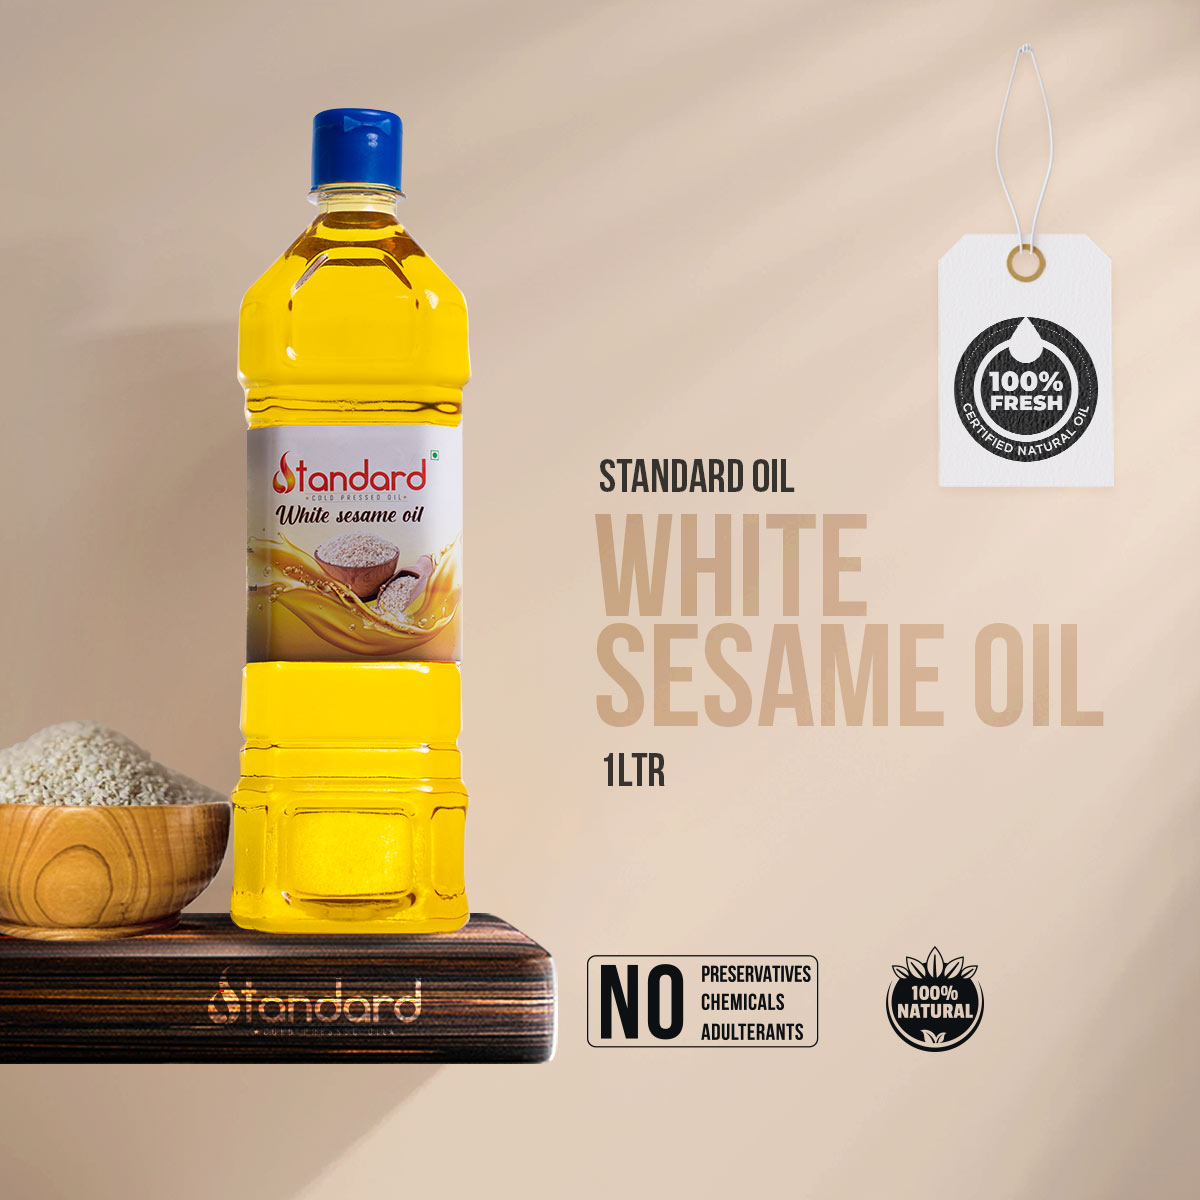 White Seasame Oil